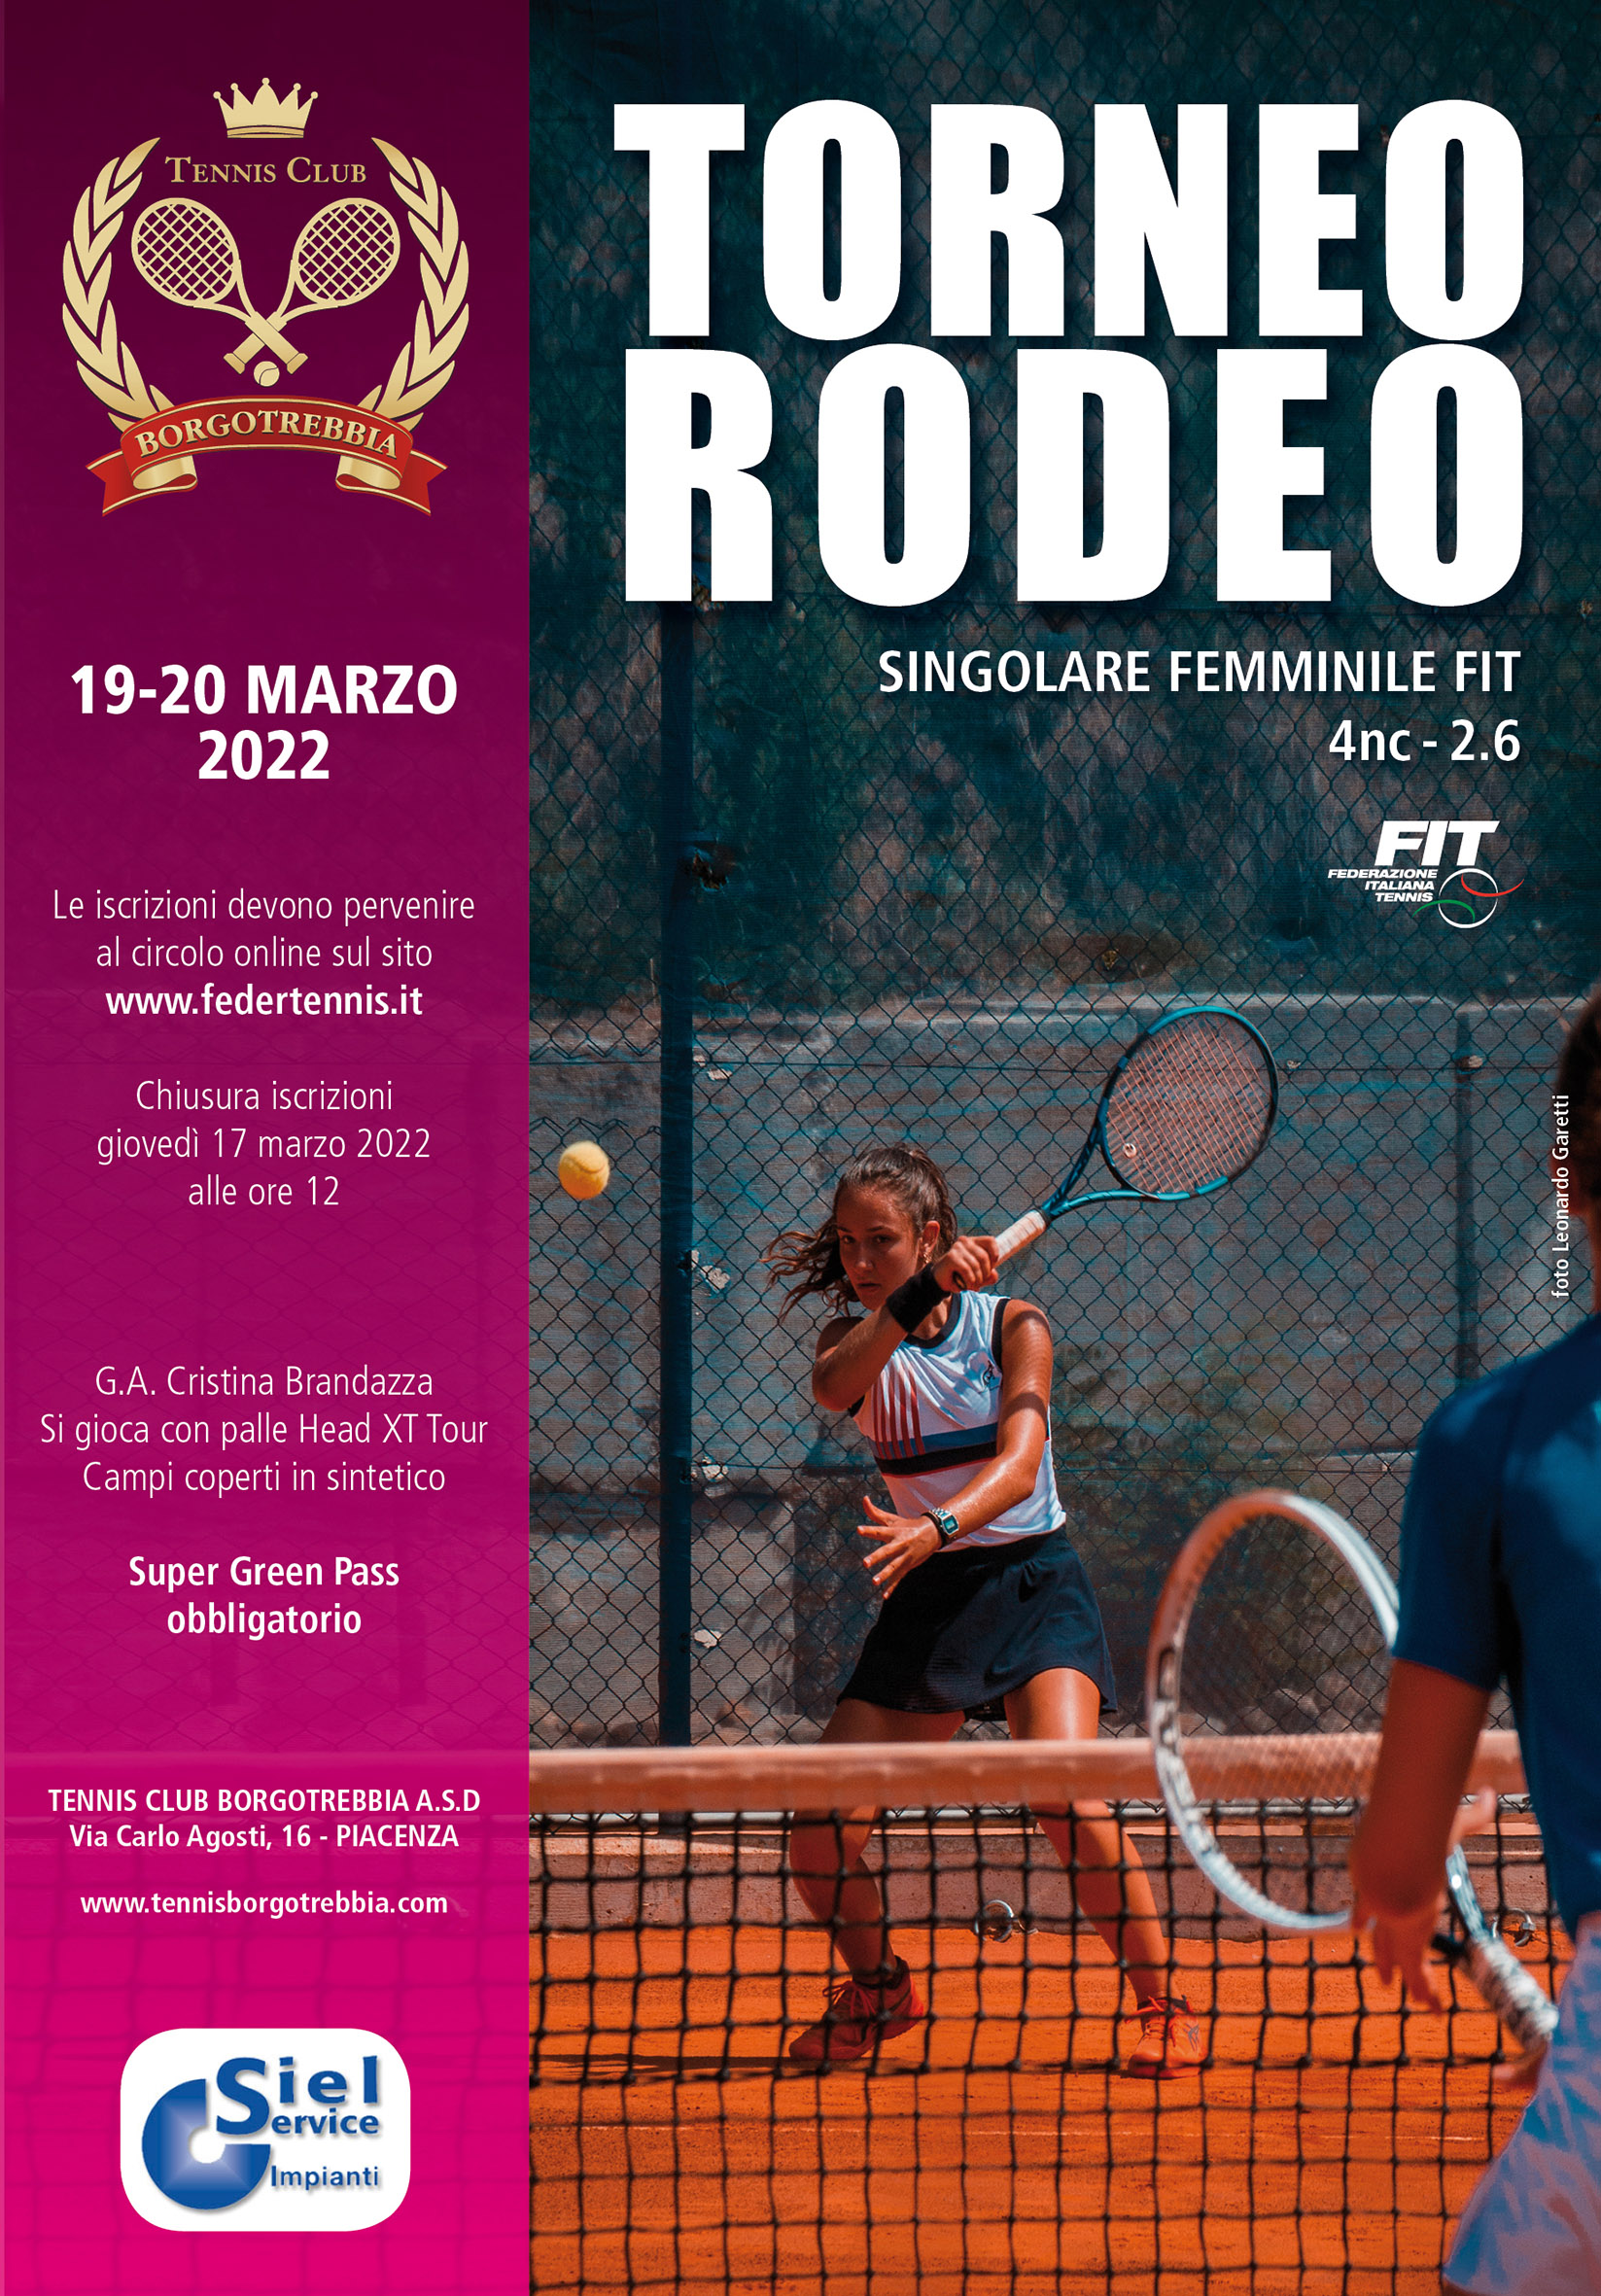 Torneo Rodeo Femminile 19-20 Marzo 2022